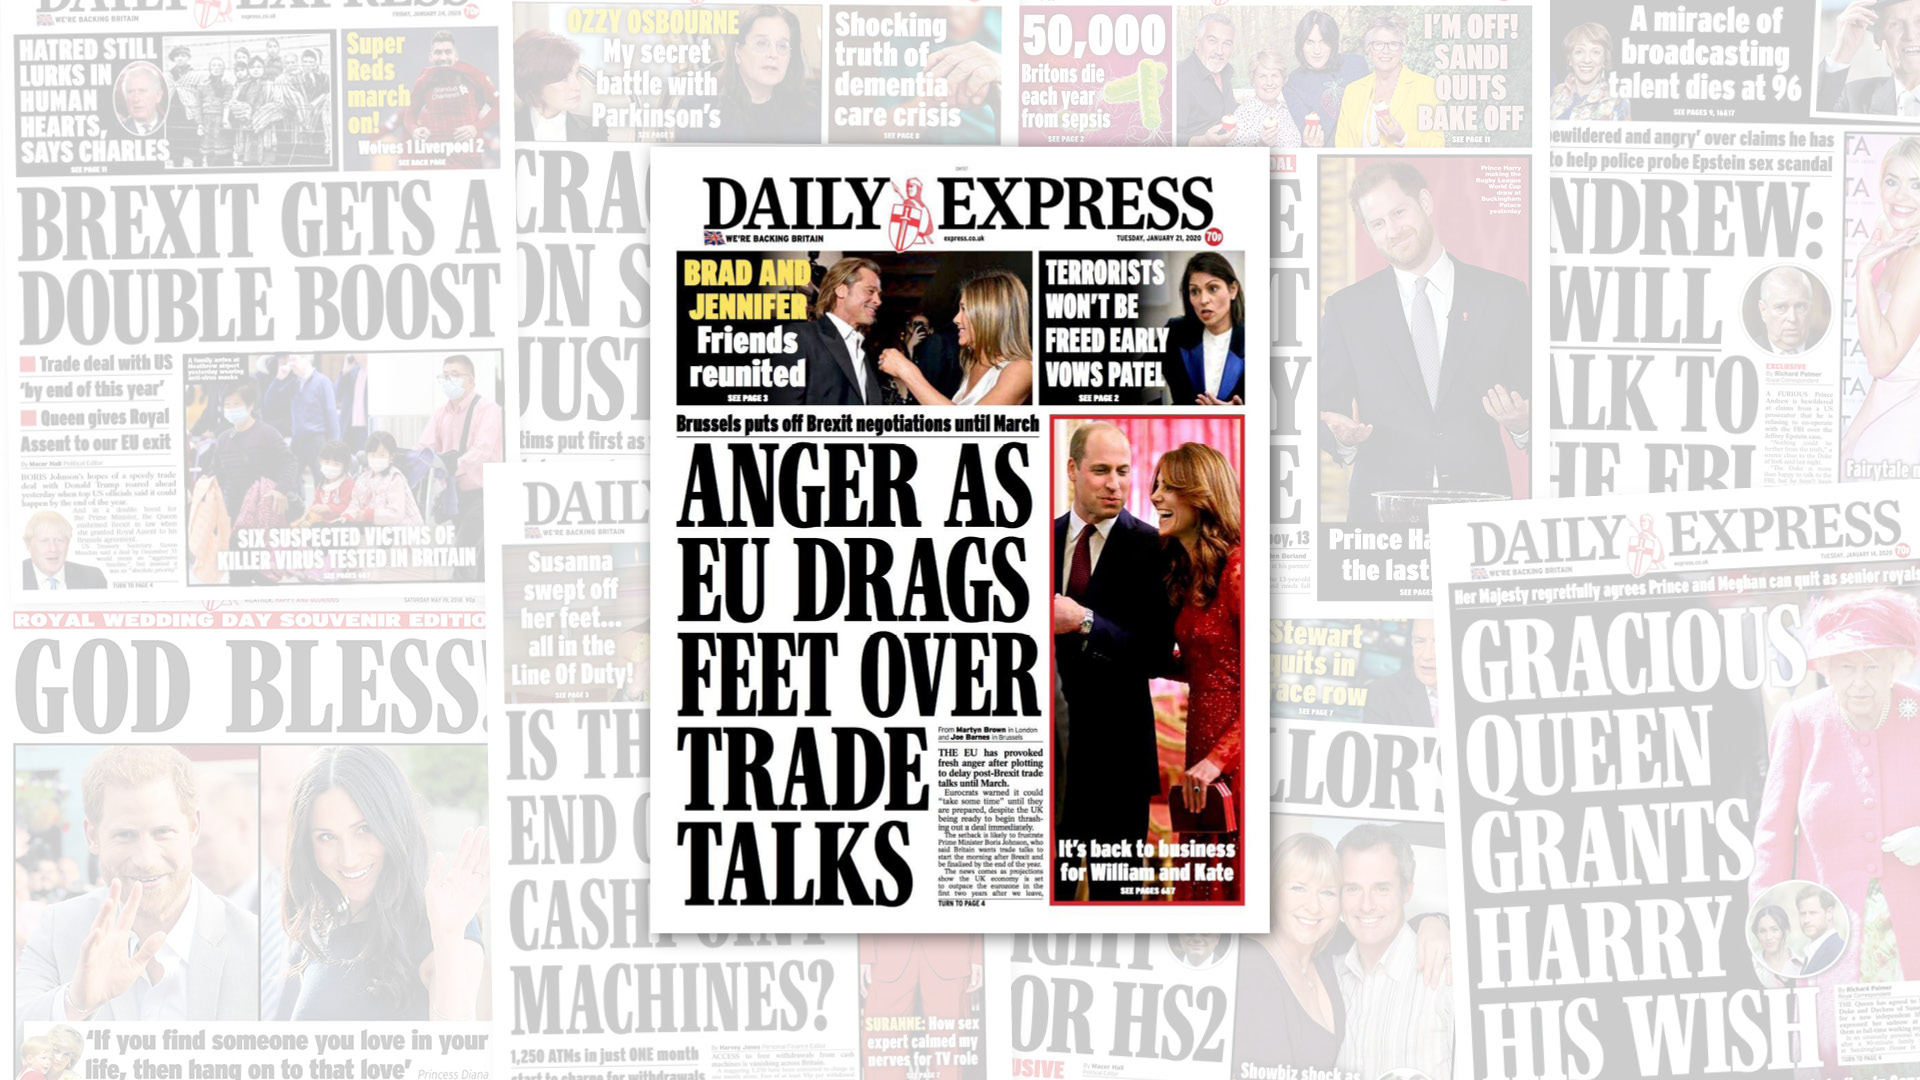 Daily Express - Hurst Media Company